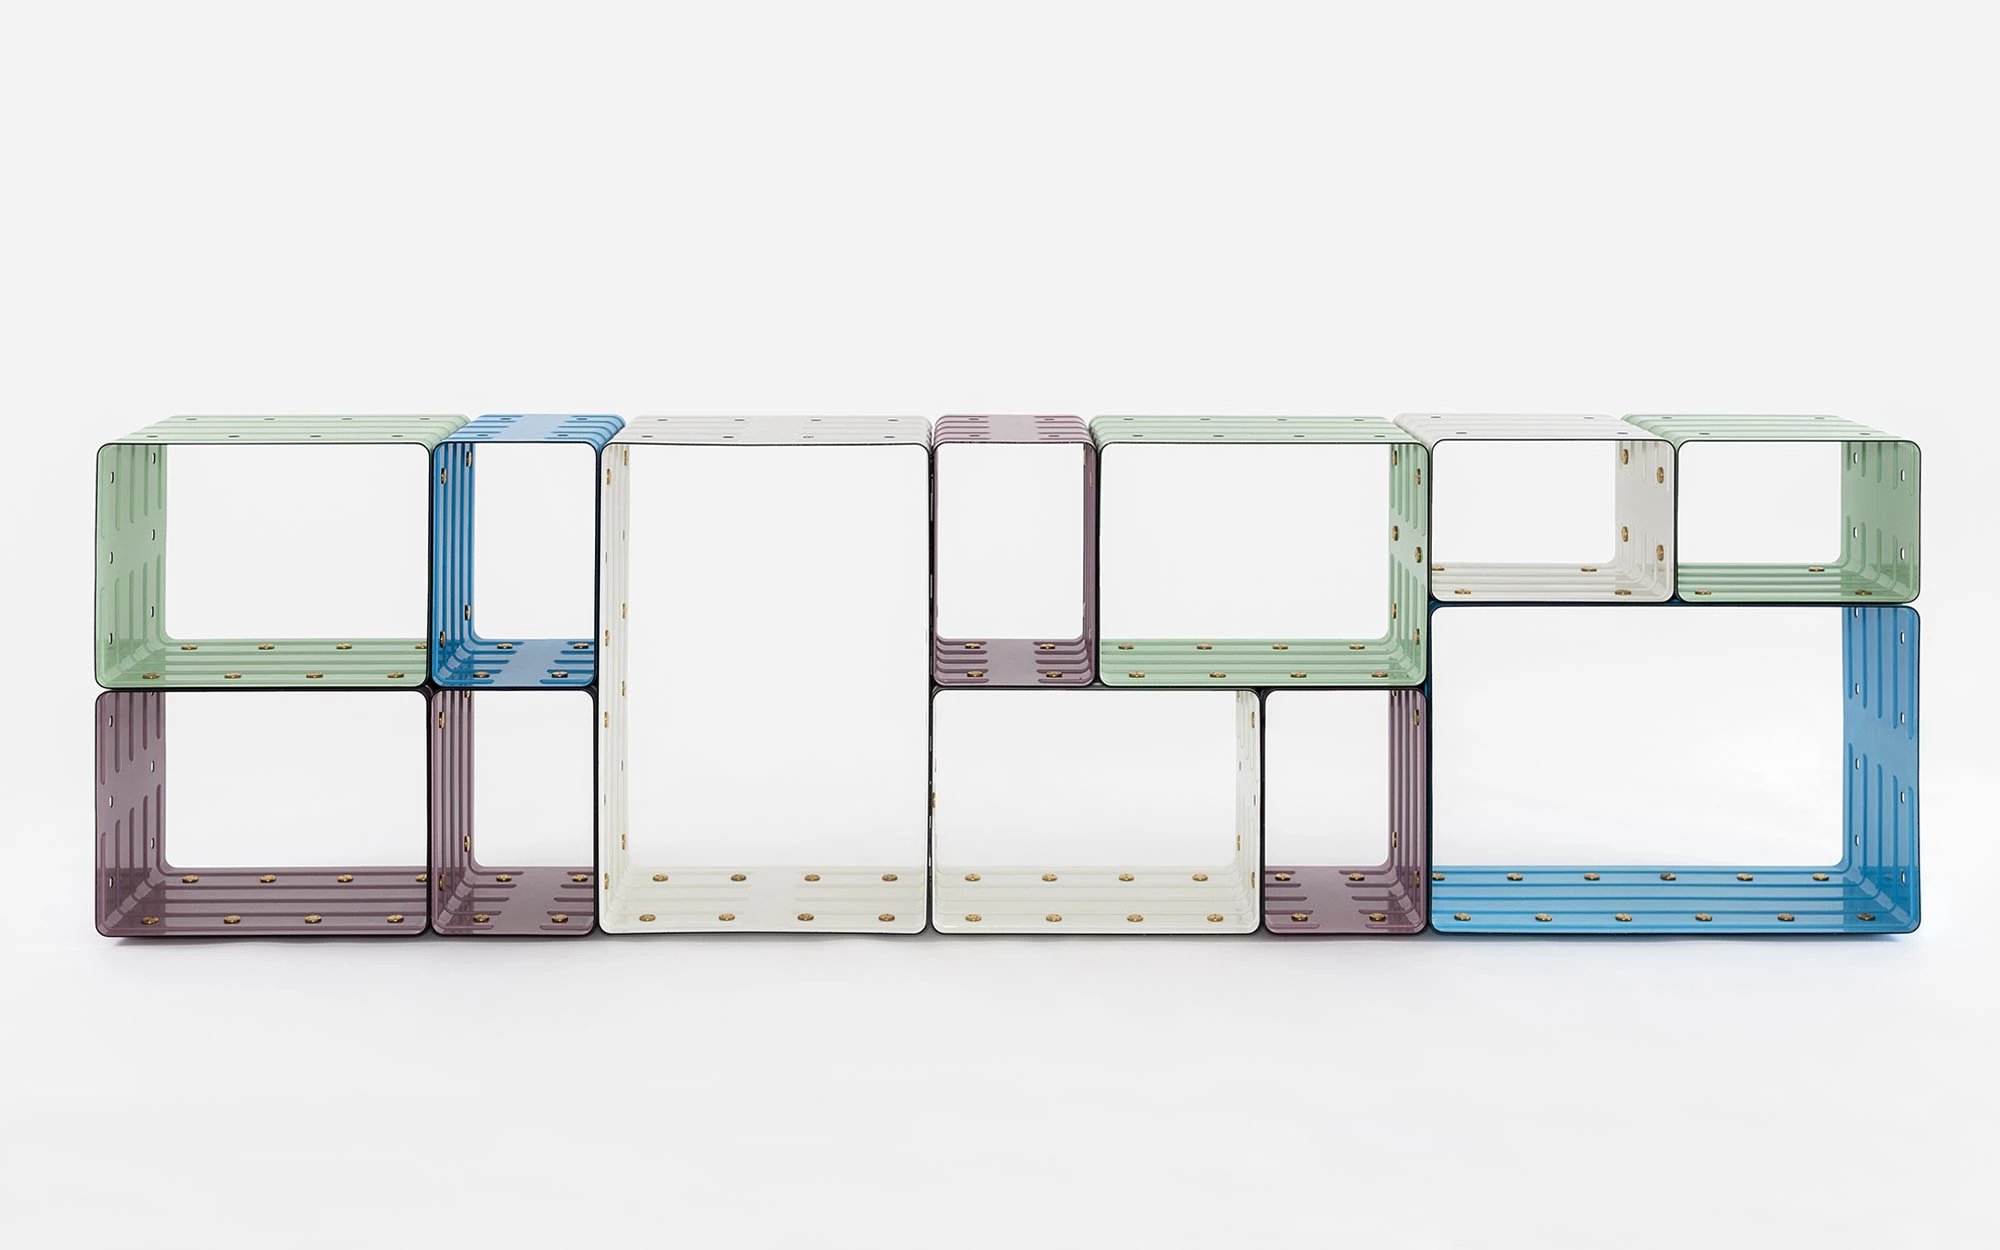 Quobus 2,4,6 multicolored - Marc Newson - Bookshelf - Galerie kreo